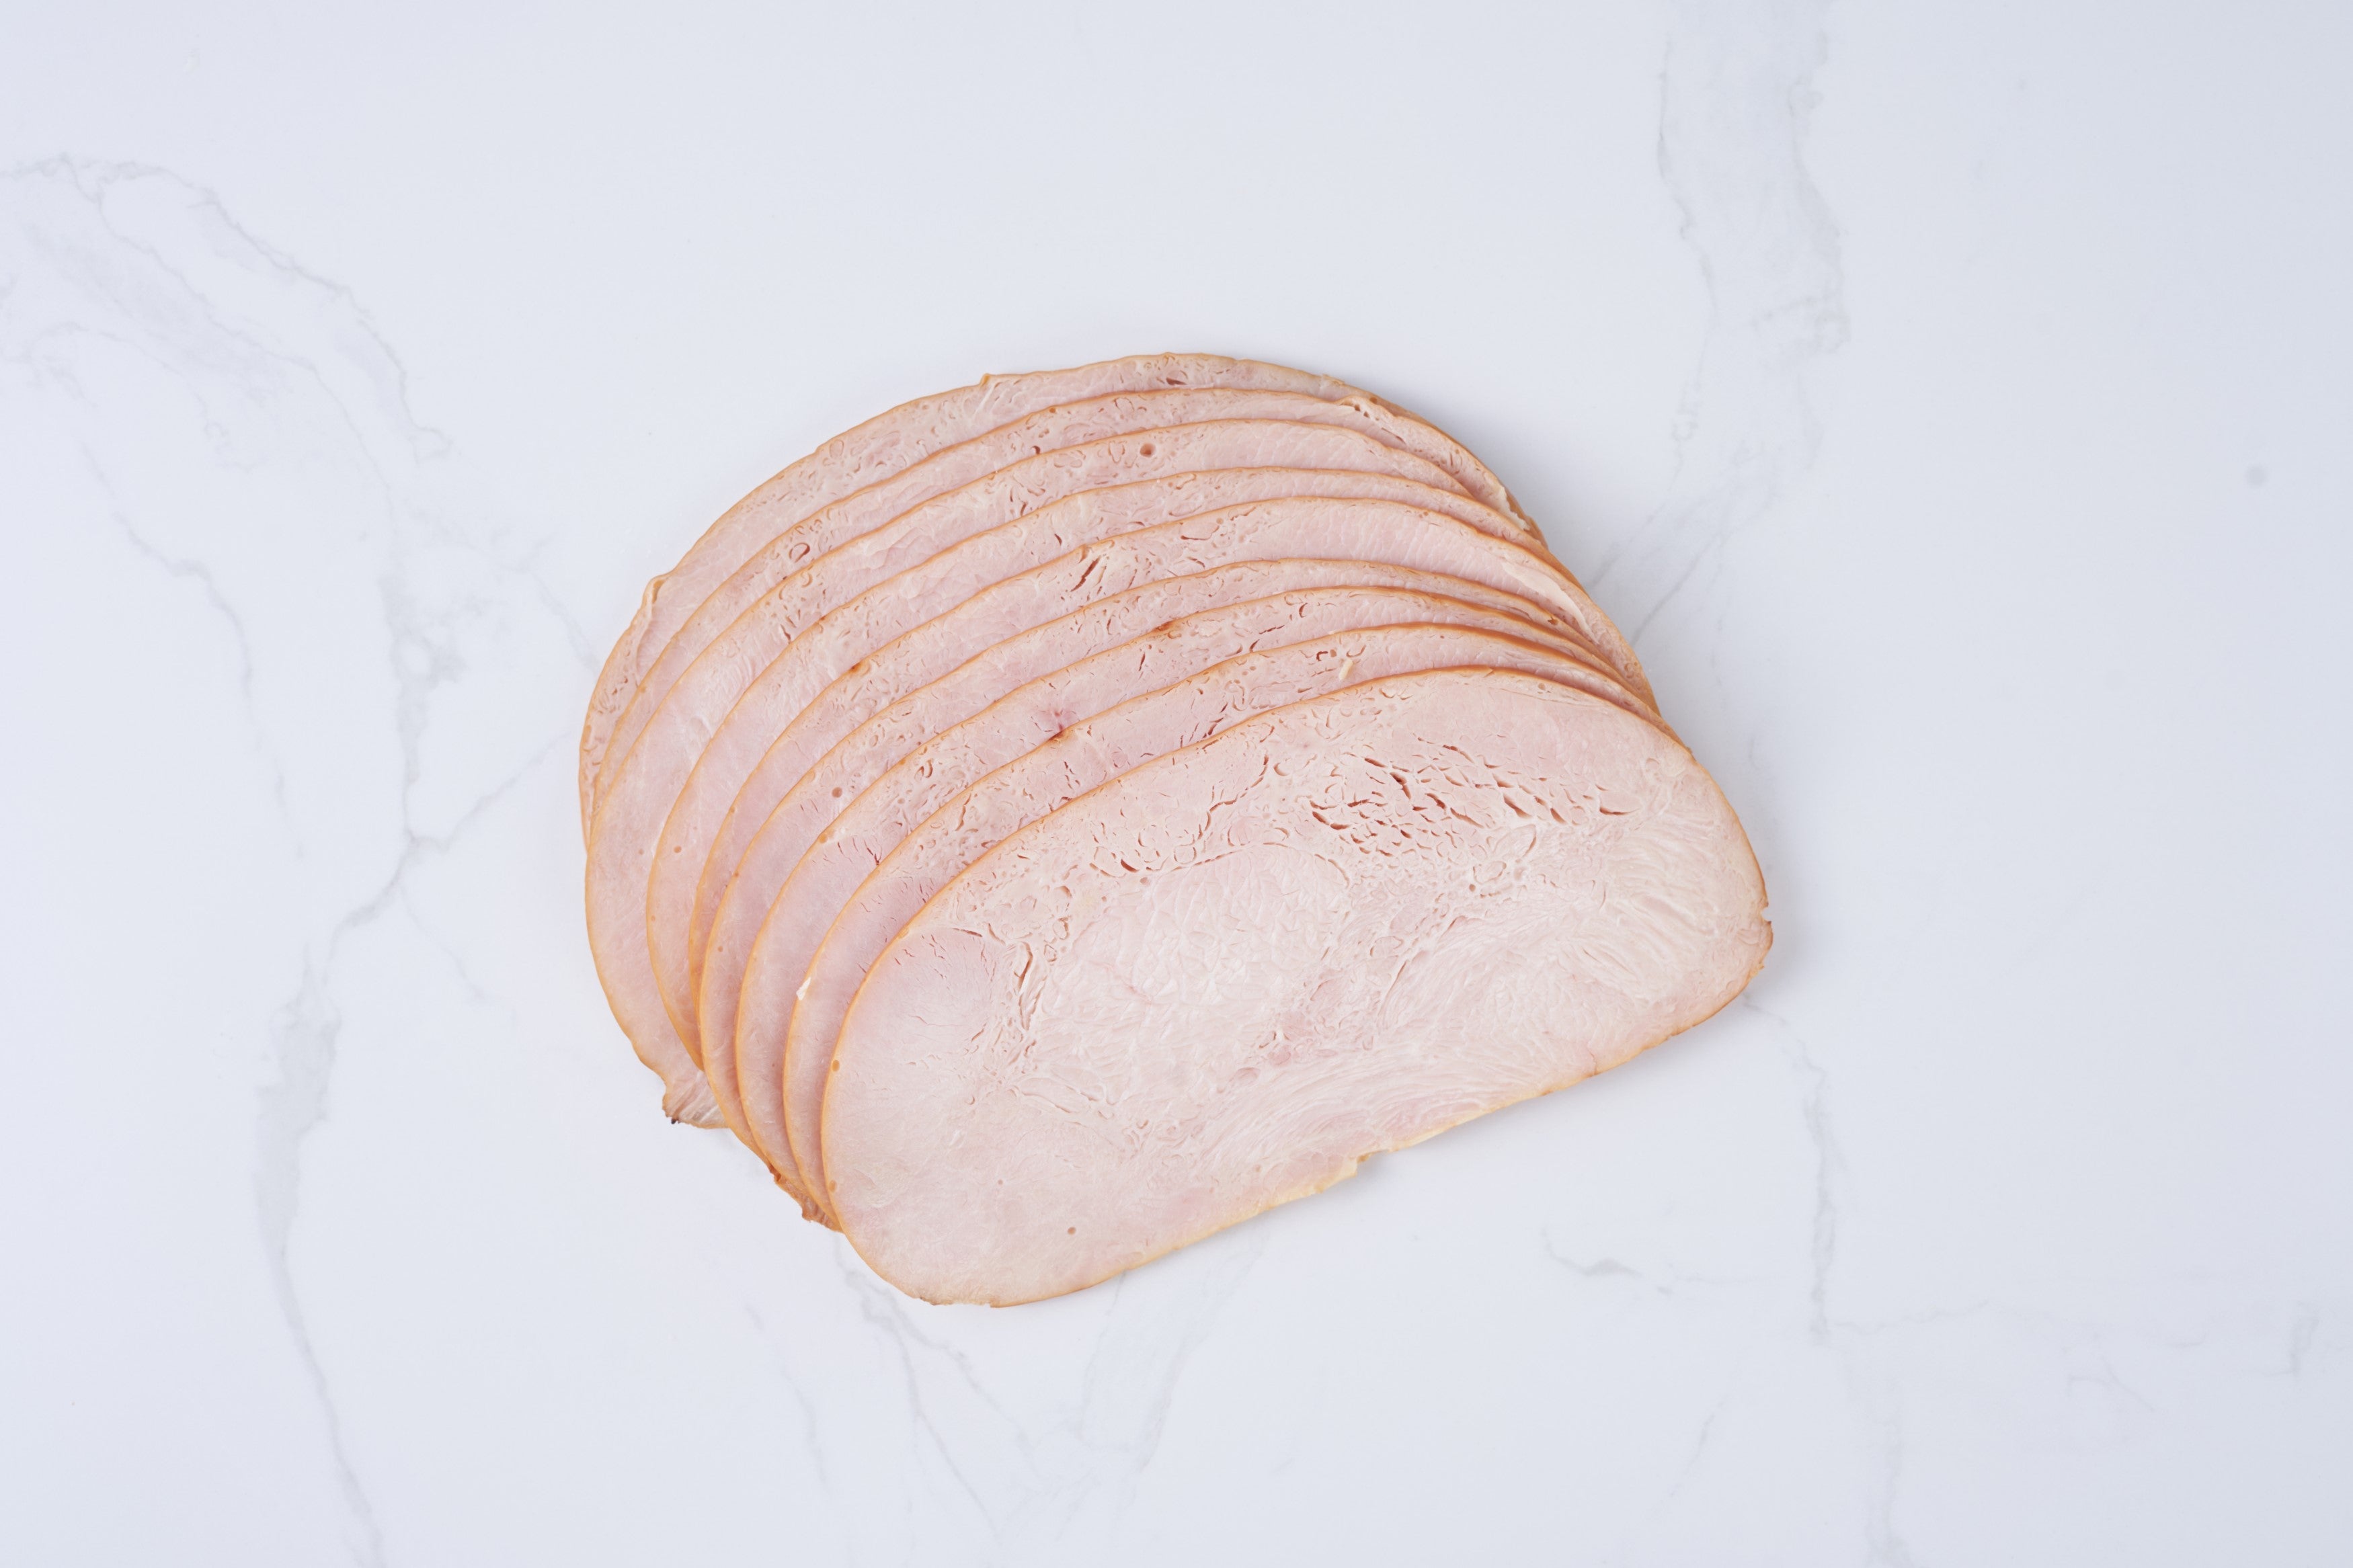 Hickory Smoked Turkey Breast (500g)